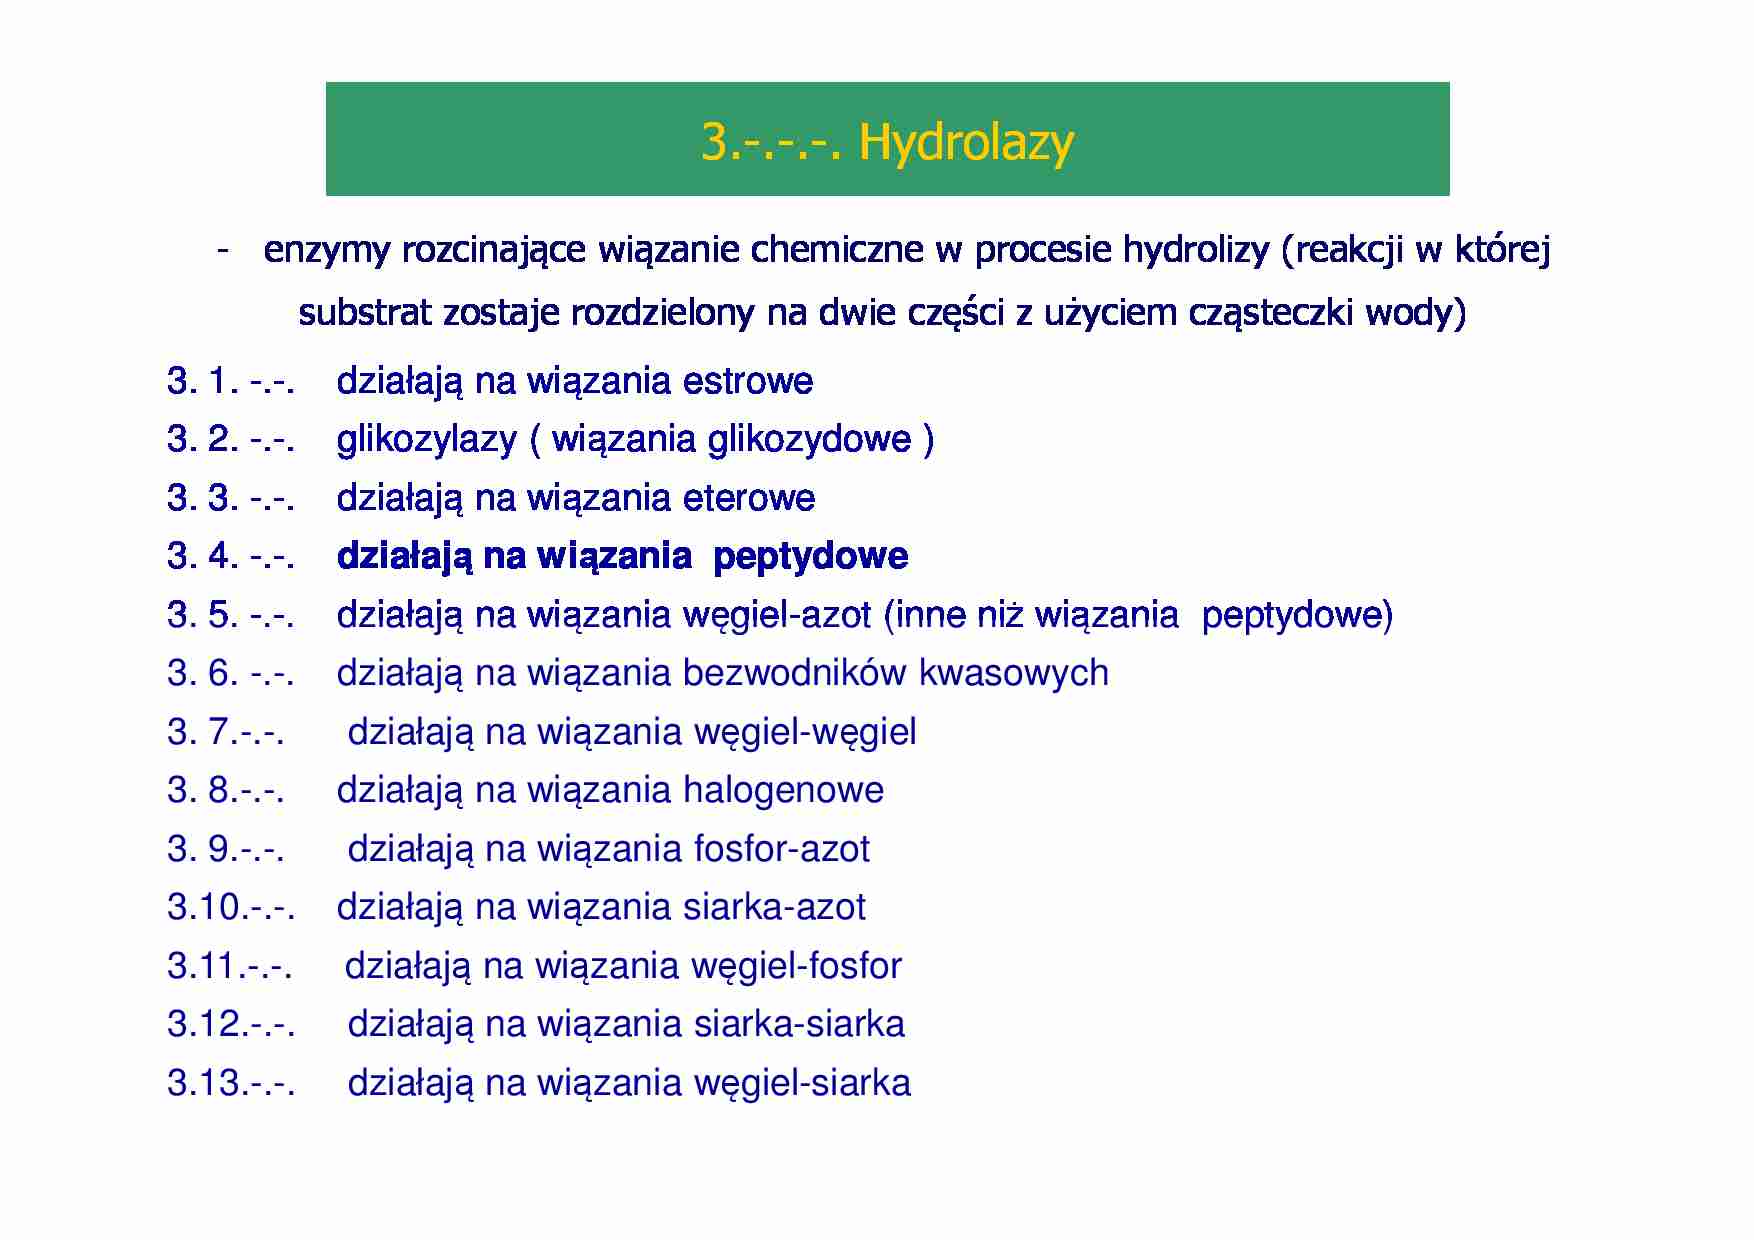 Enzymologia- prezentacja - Hydrolazy - strona 1